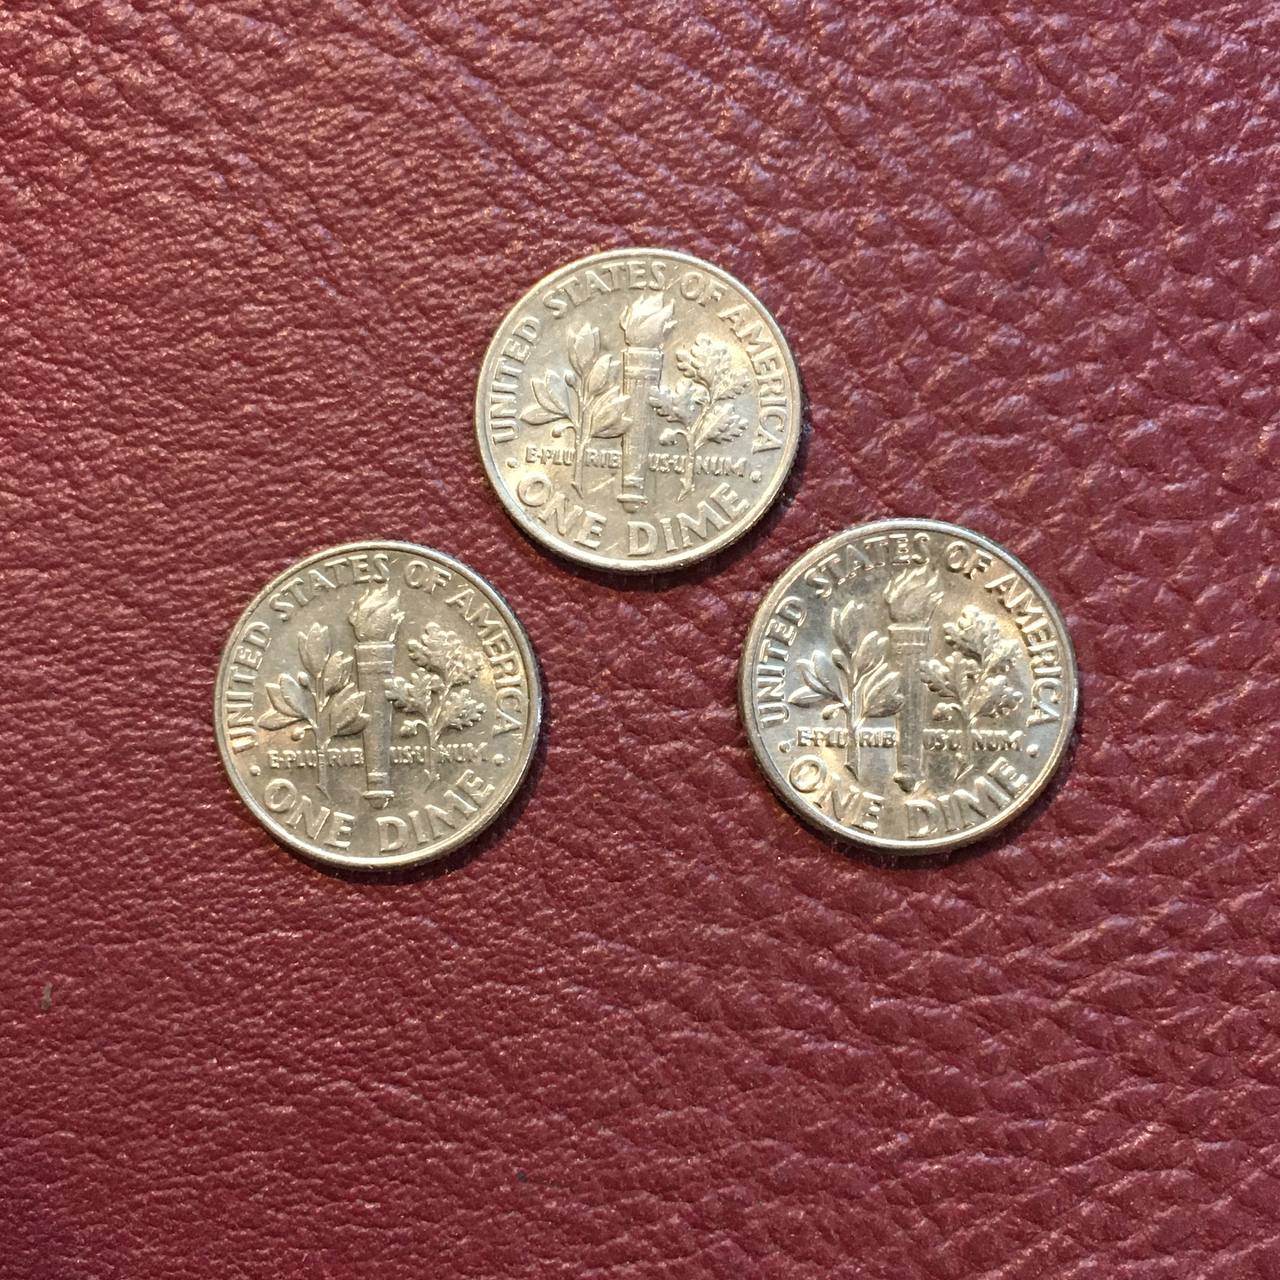 سه قطعه سکه وان دایم امریکا با تصویر فرانکلین روزولت